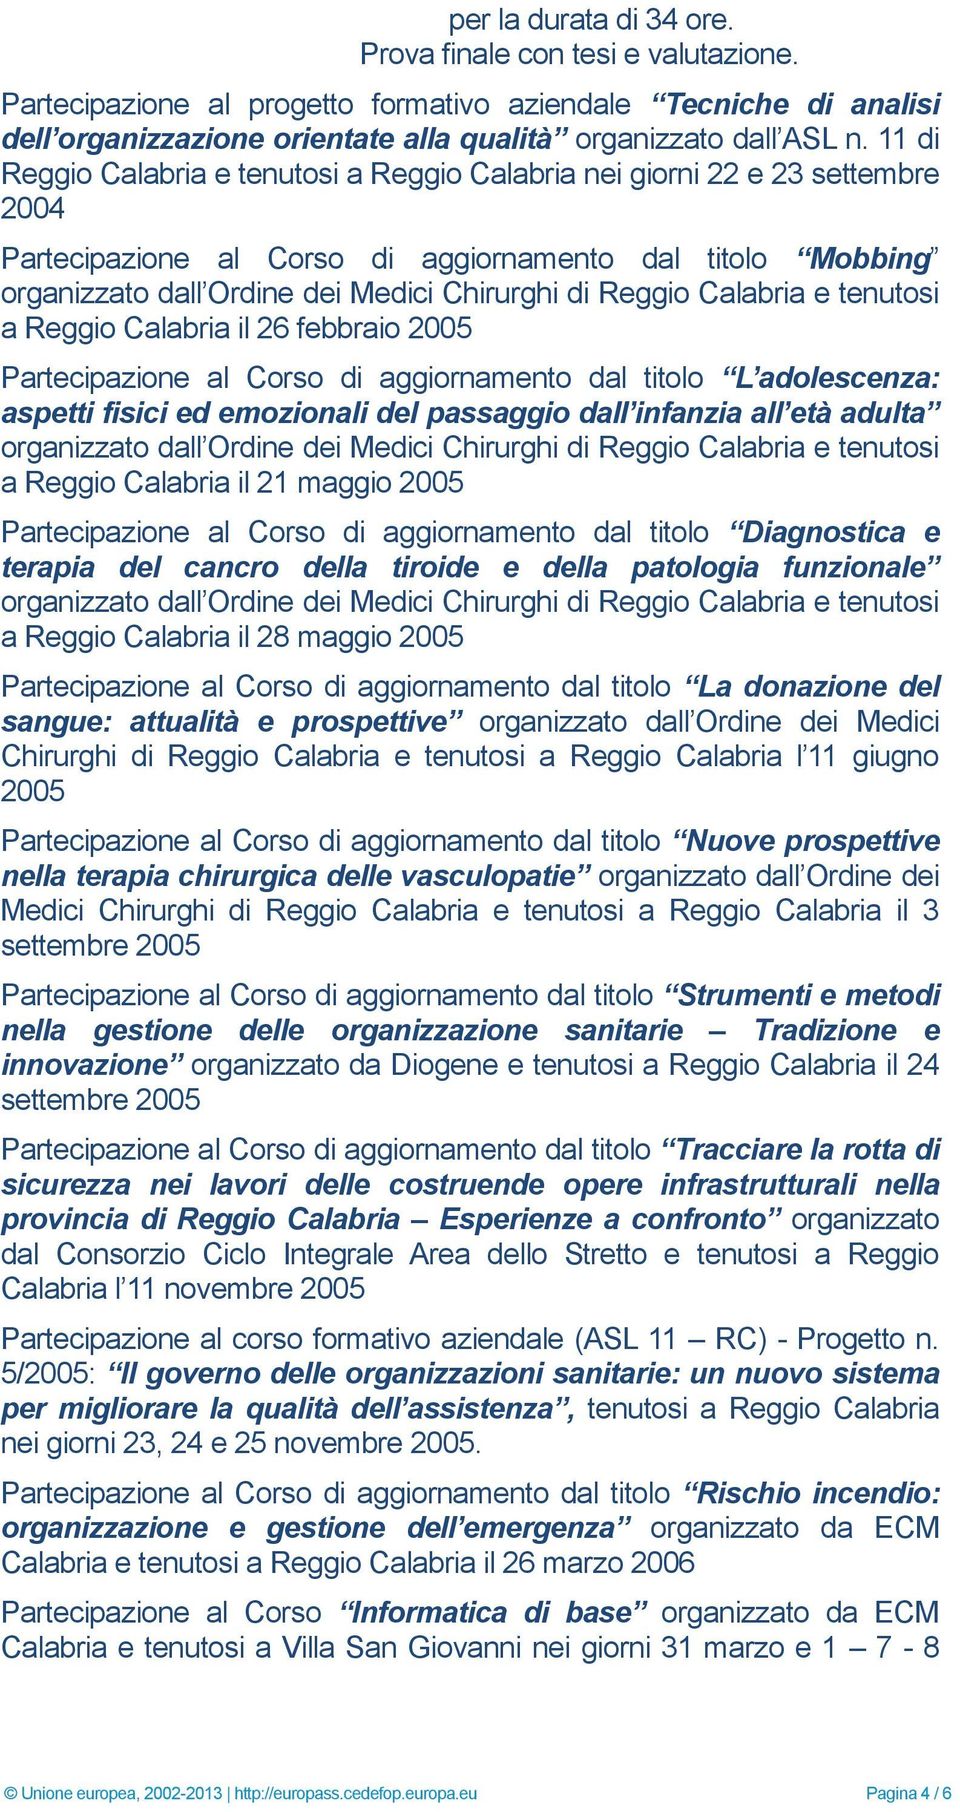 Calabria e tenutosi a Reggio Calabria il 26 febbraio 2005 Partecipazione al Corso di aggiornamento dal titolo L adolescenza: aspetti fisici ed emozionali del passaggio dall infanzia all età adulta